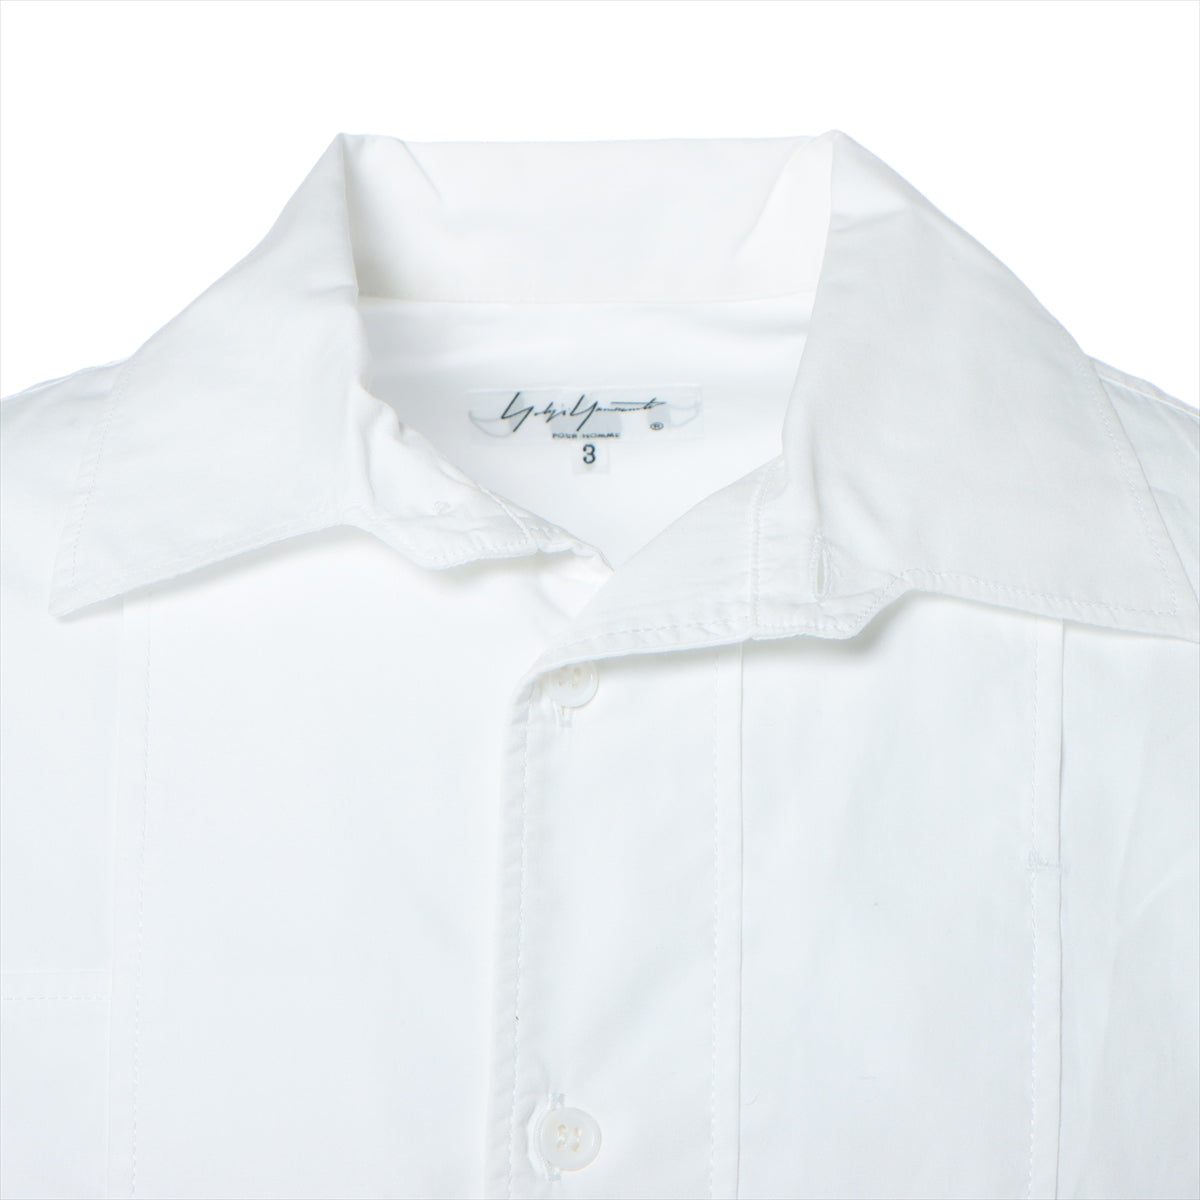 7,396円M3-YL098 グッチ コットン ホワイト 長袖シャツ